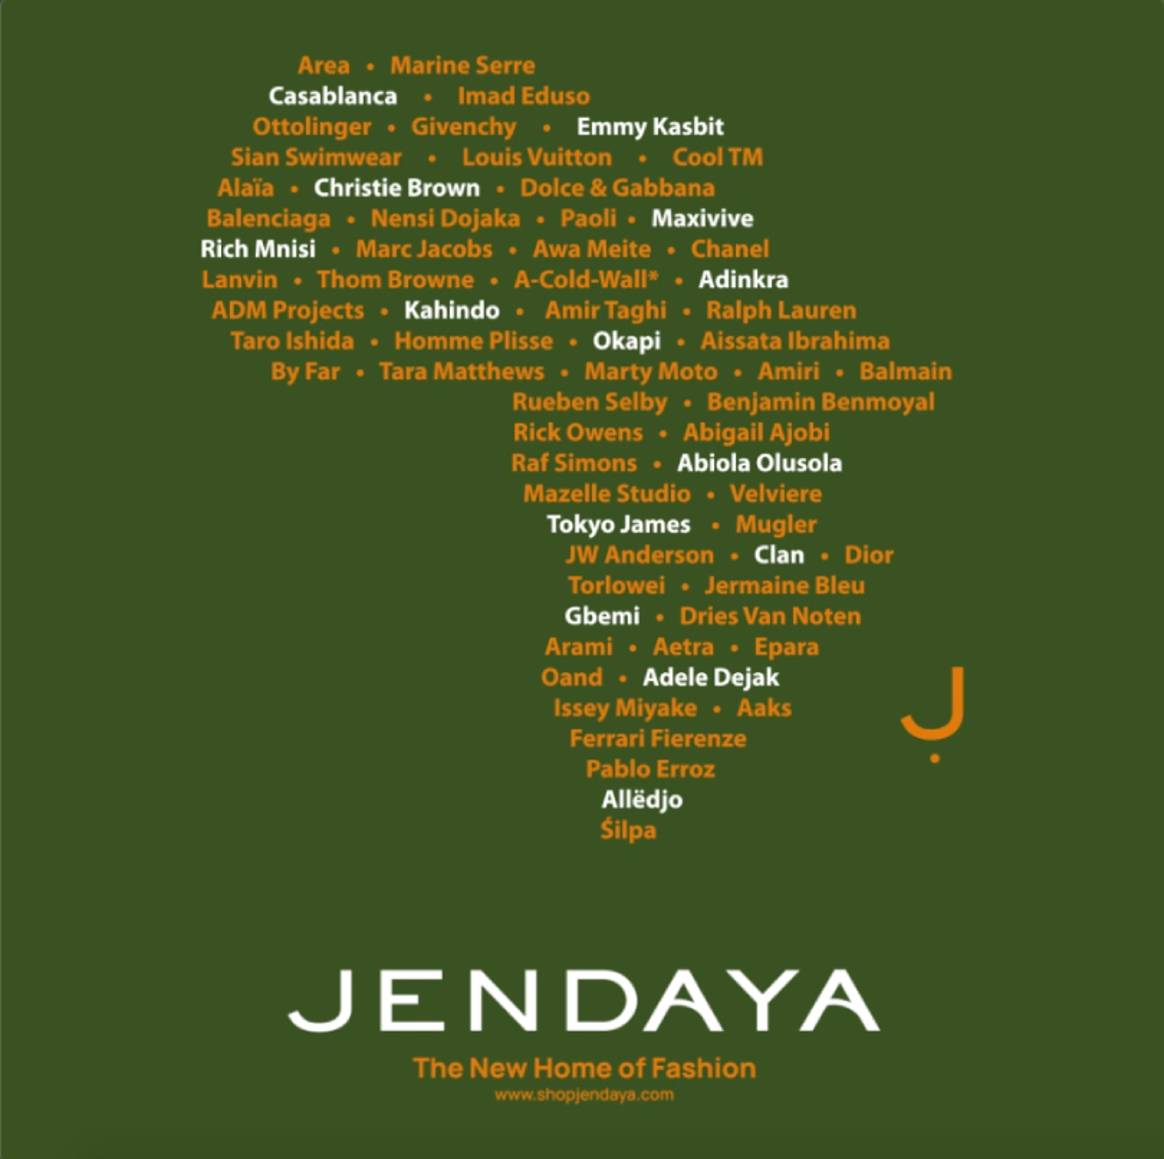 Jendaya s’offre une campagne mondiale pour célébrer le nouveau luxe